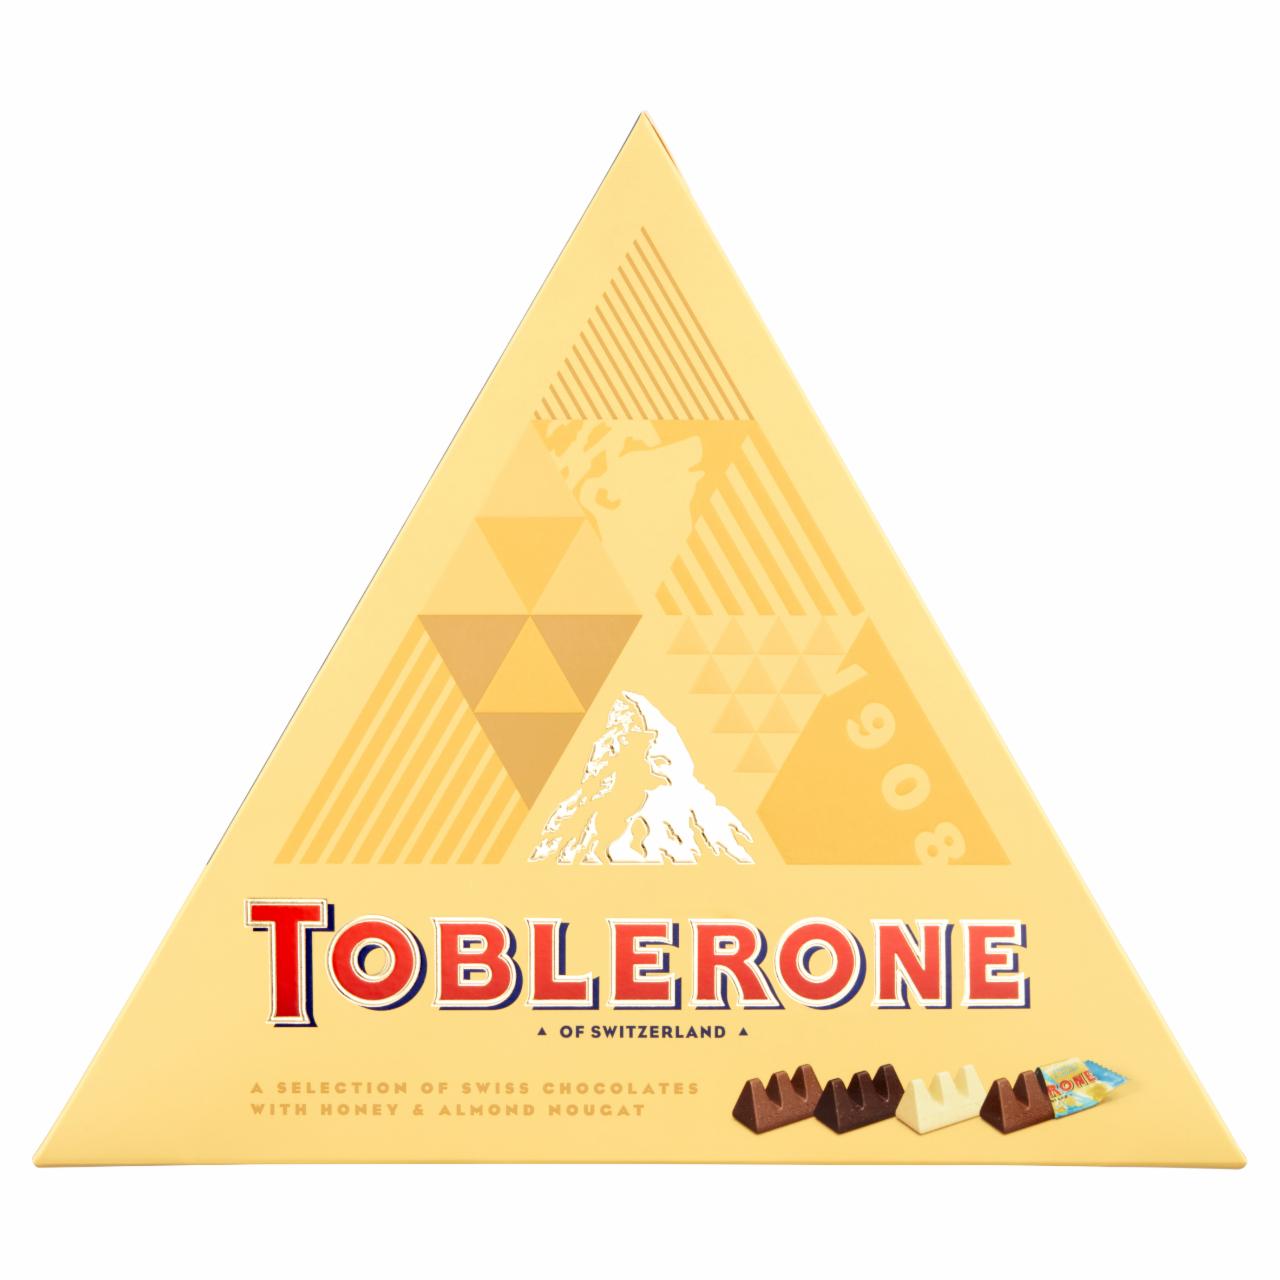 Képek - Toblerone svájci csokoládé válogatás 344 g